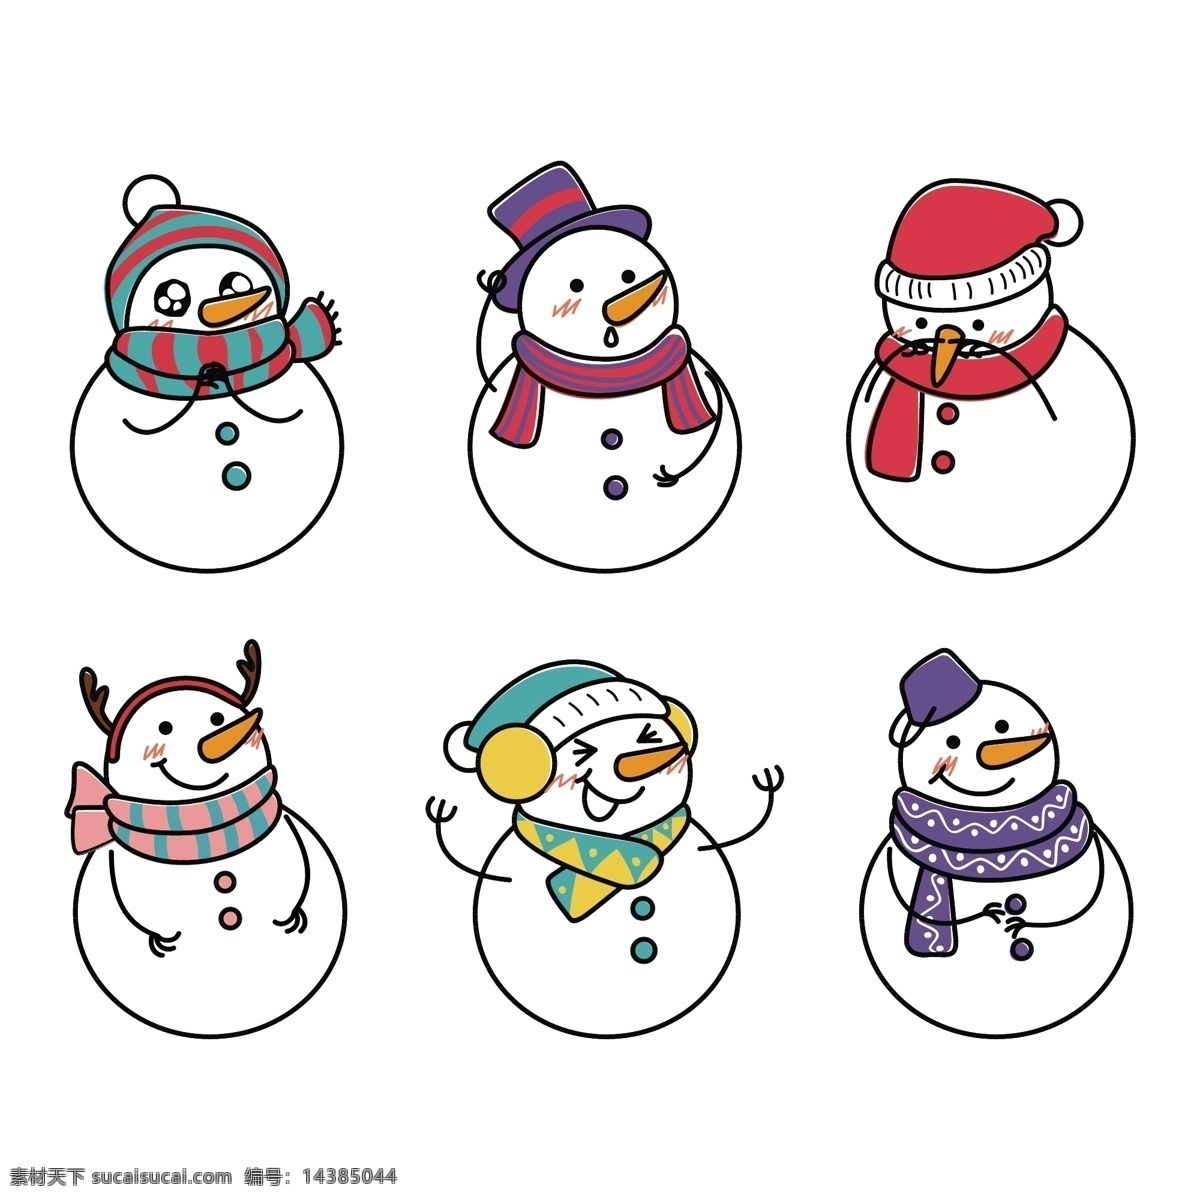 卡通雪人 雪人 幼儿园素材 冬季 冬天 雪人素材 卡通素材 圣诞节素材 圣诞雪人 圣诞节 可爱雪人 可爱卡通 卡通设计